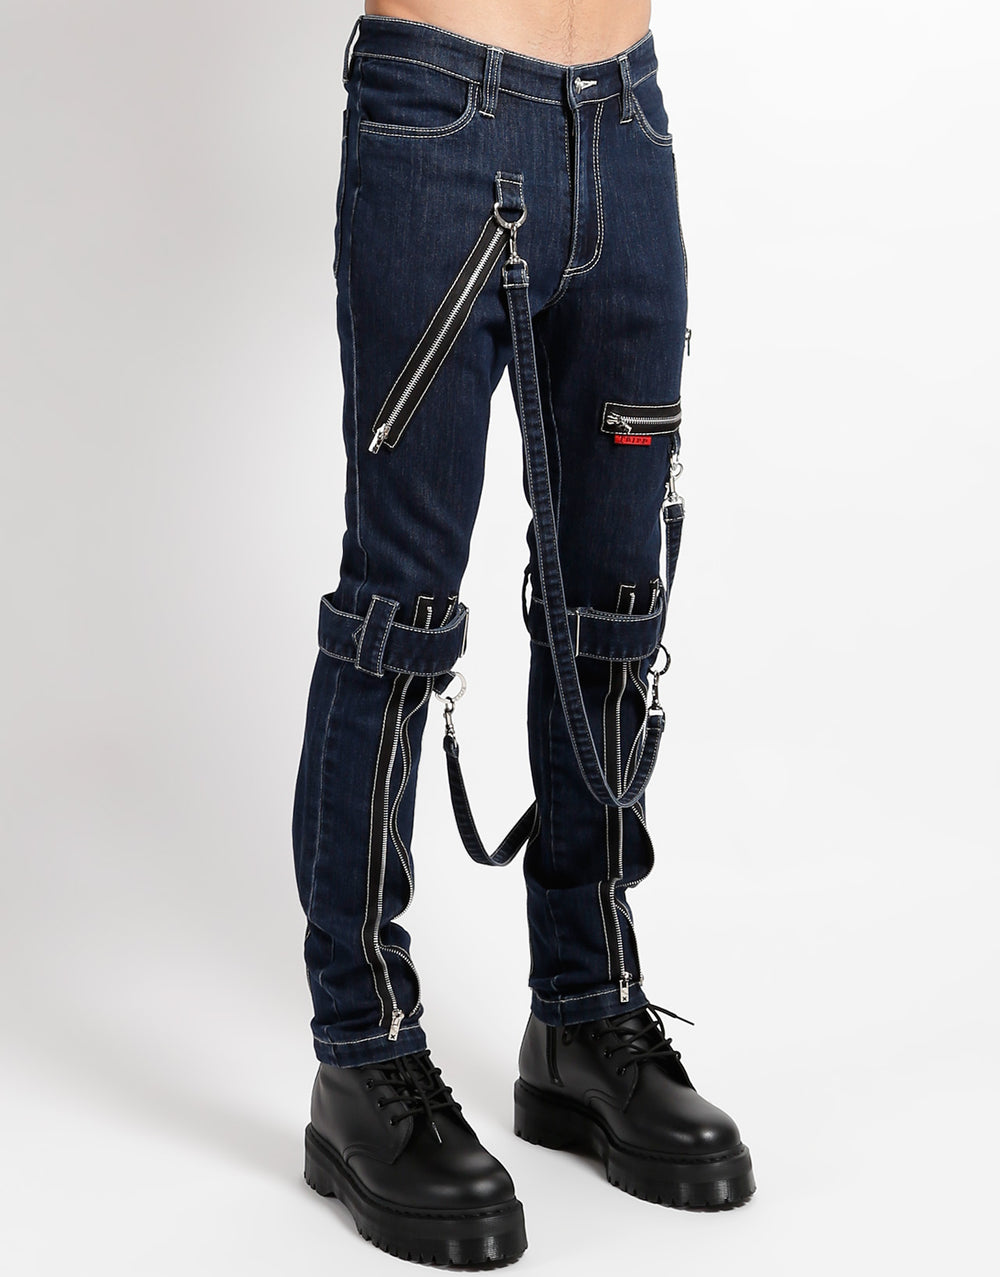 nba【EVISU】bondage denim jeans 30×31